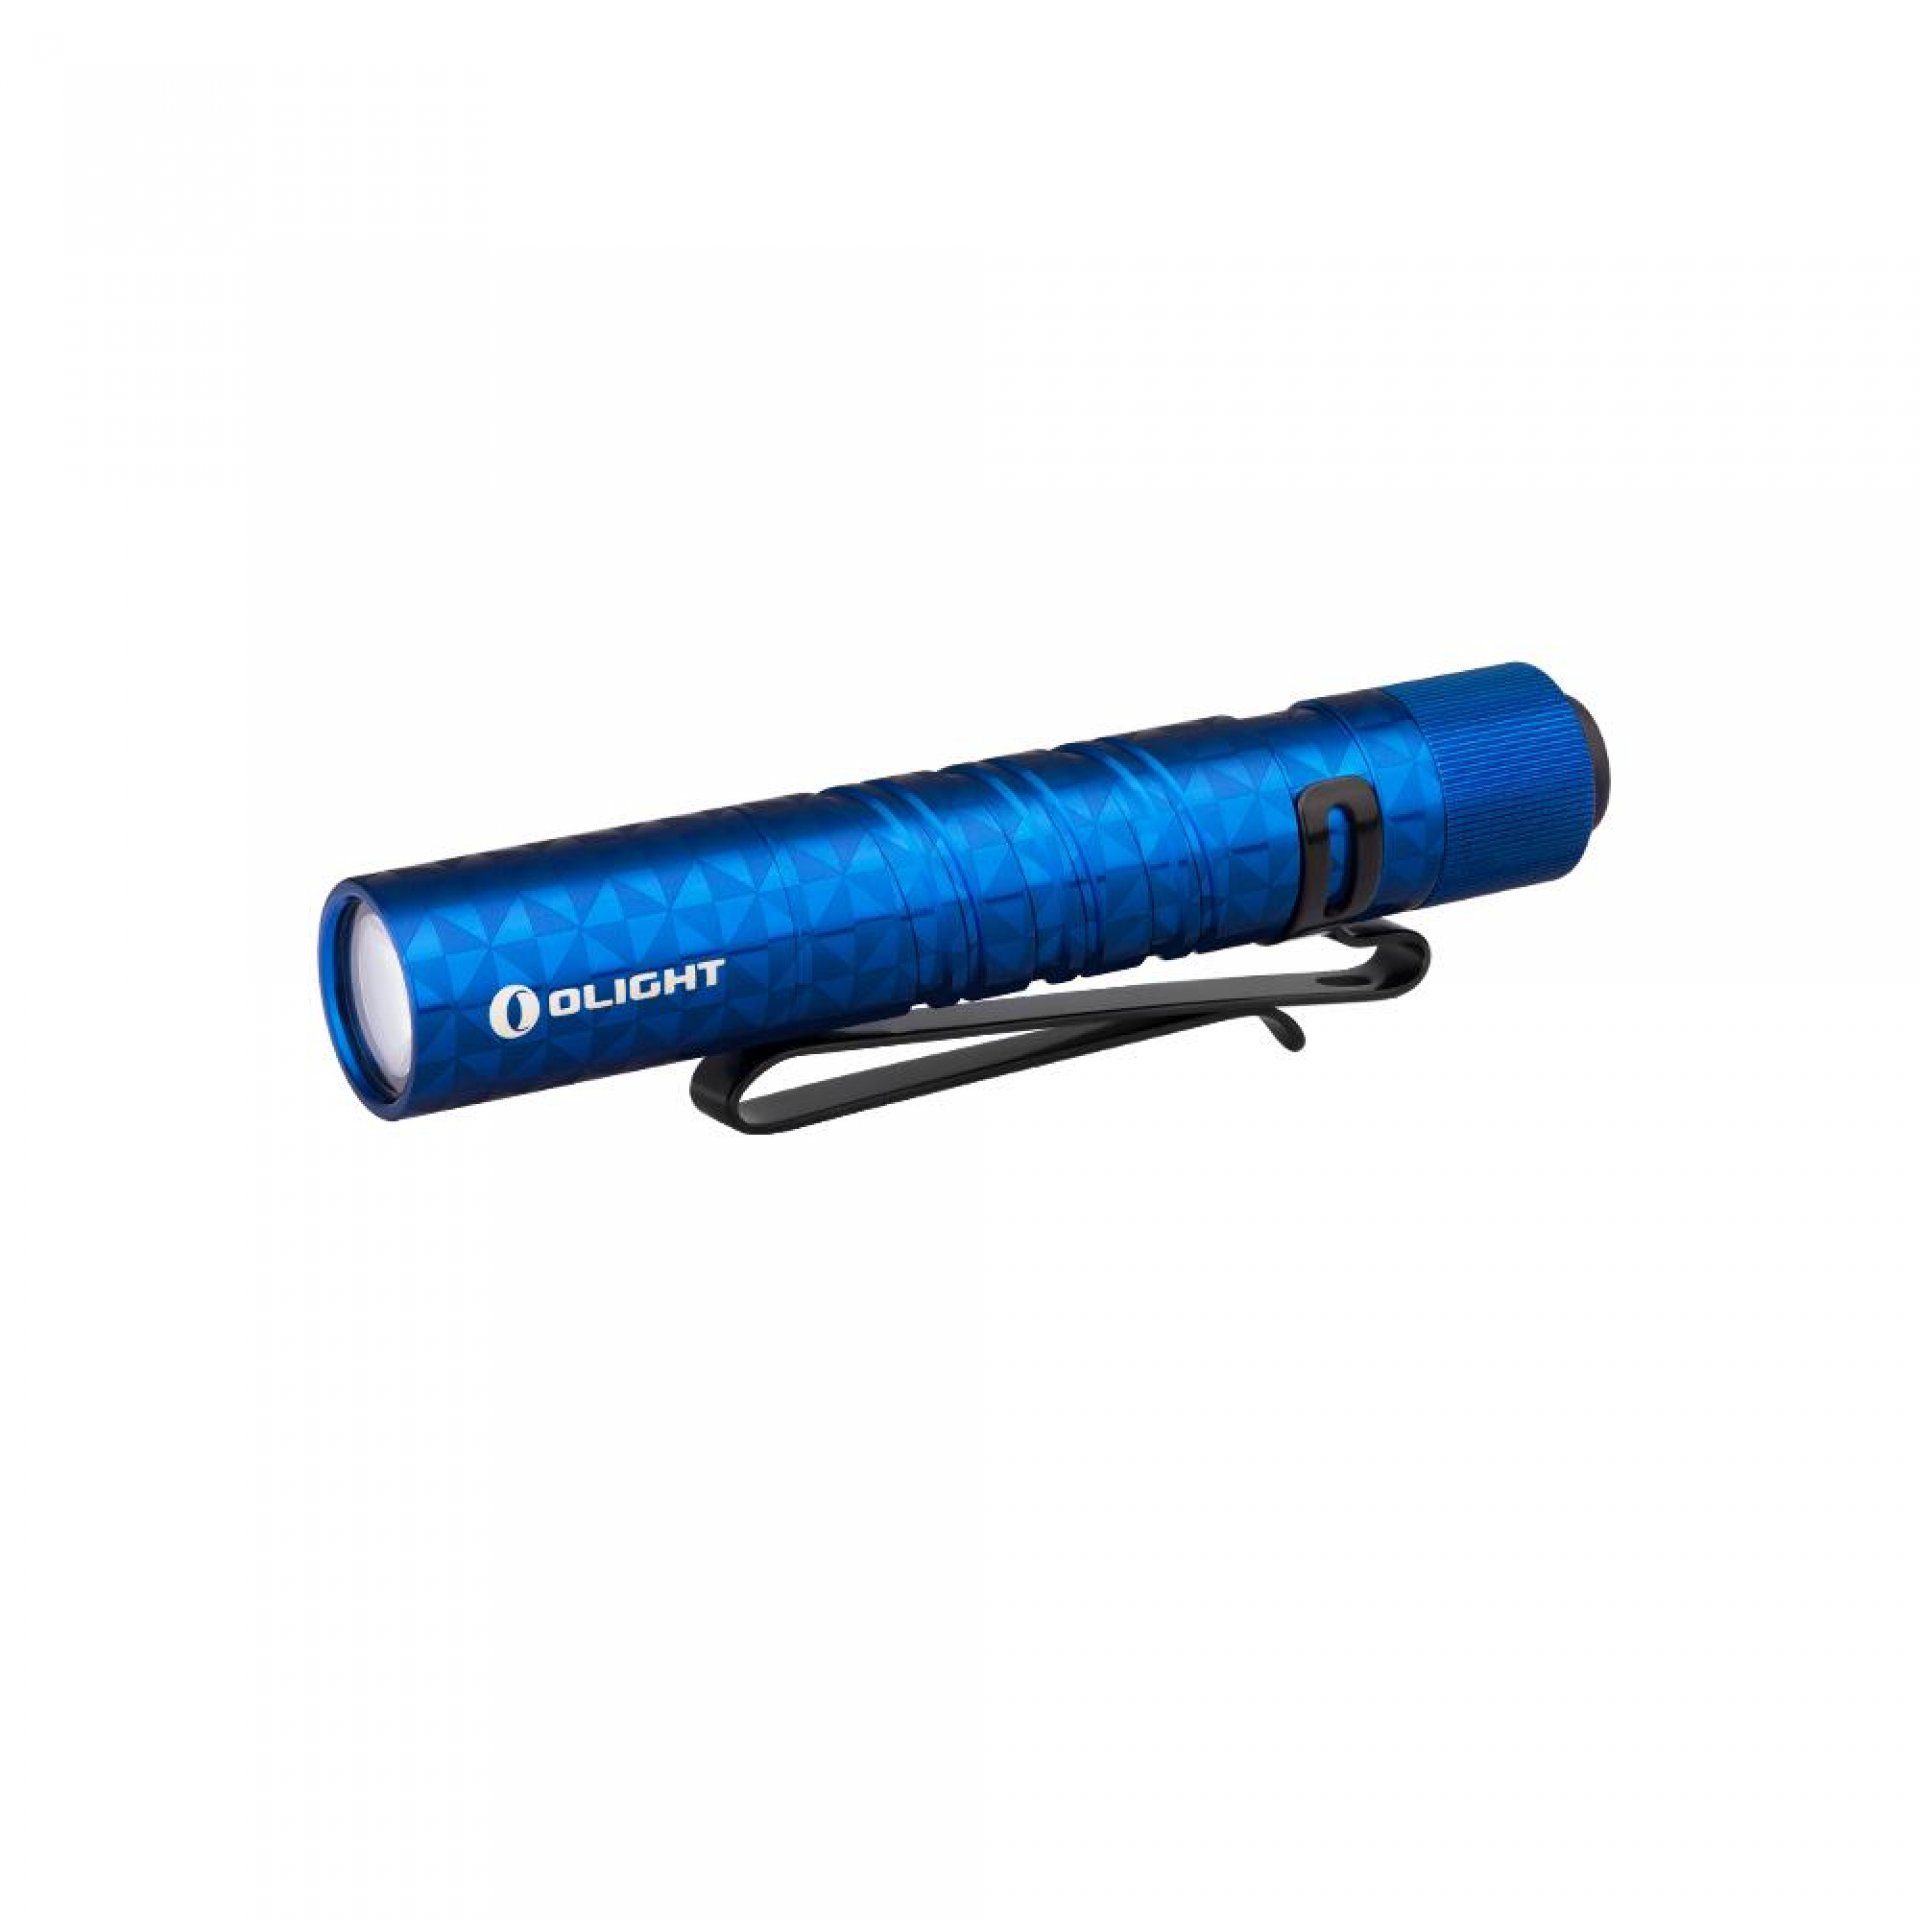 OLIGHT Taschenlampe I3T EOS Mini LED Taschenlampe Schlüsselbund 180 Lumen 66m Reichweite Pinwheel Blau